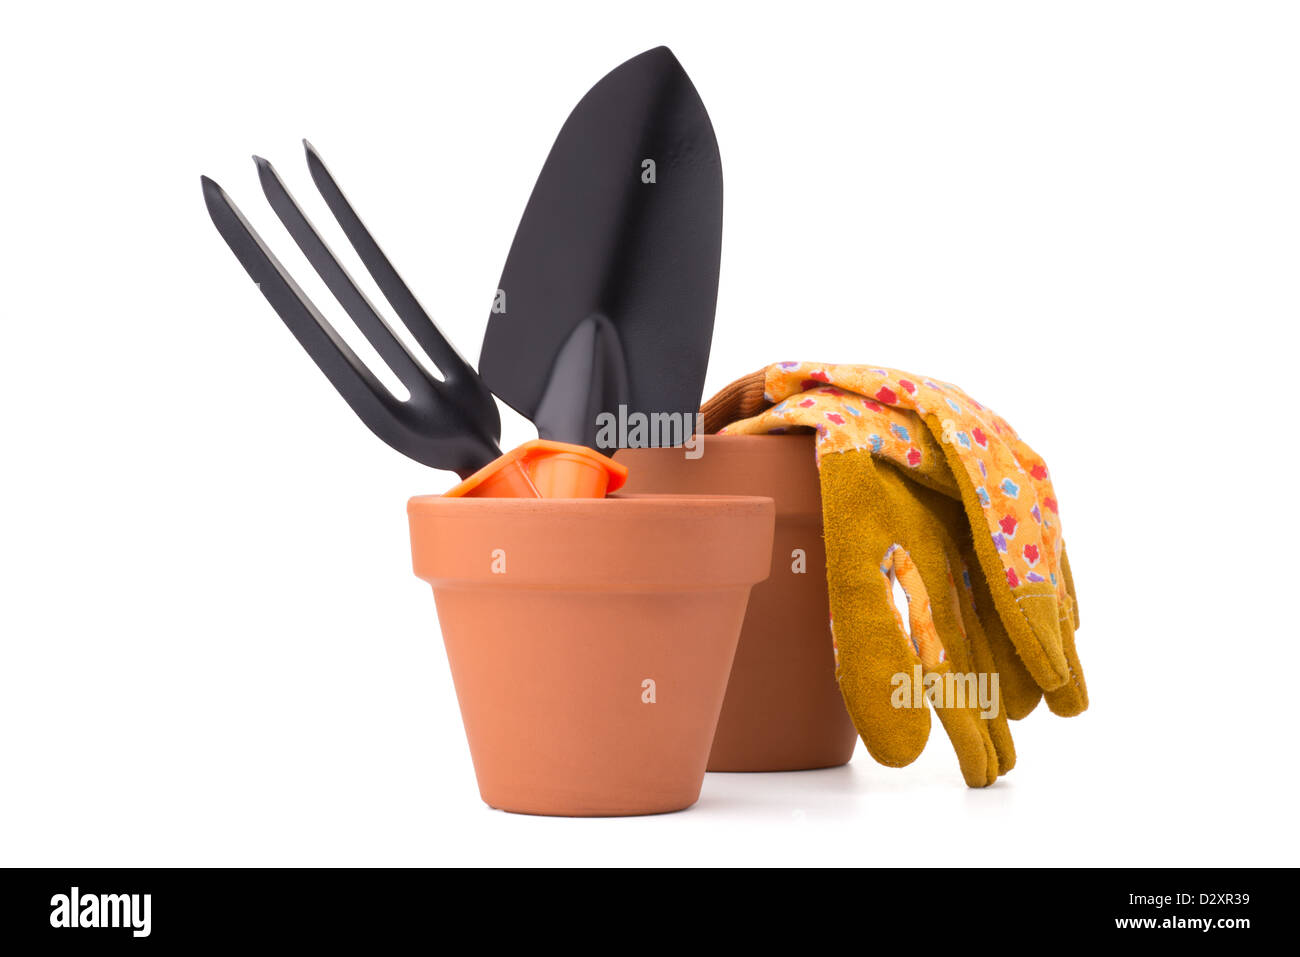 Giardinaggio: gruppo di strumenti e accessori (guanti, pentola floreale, cazzuola e forcella di scavo), isolati su sfondo bianco Foto Stock